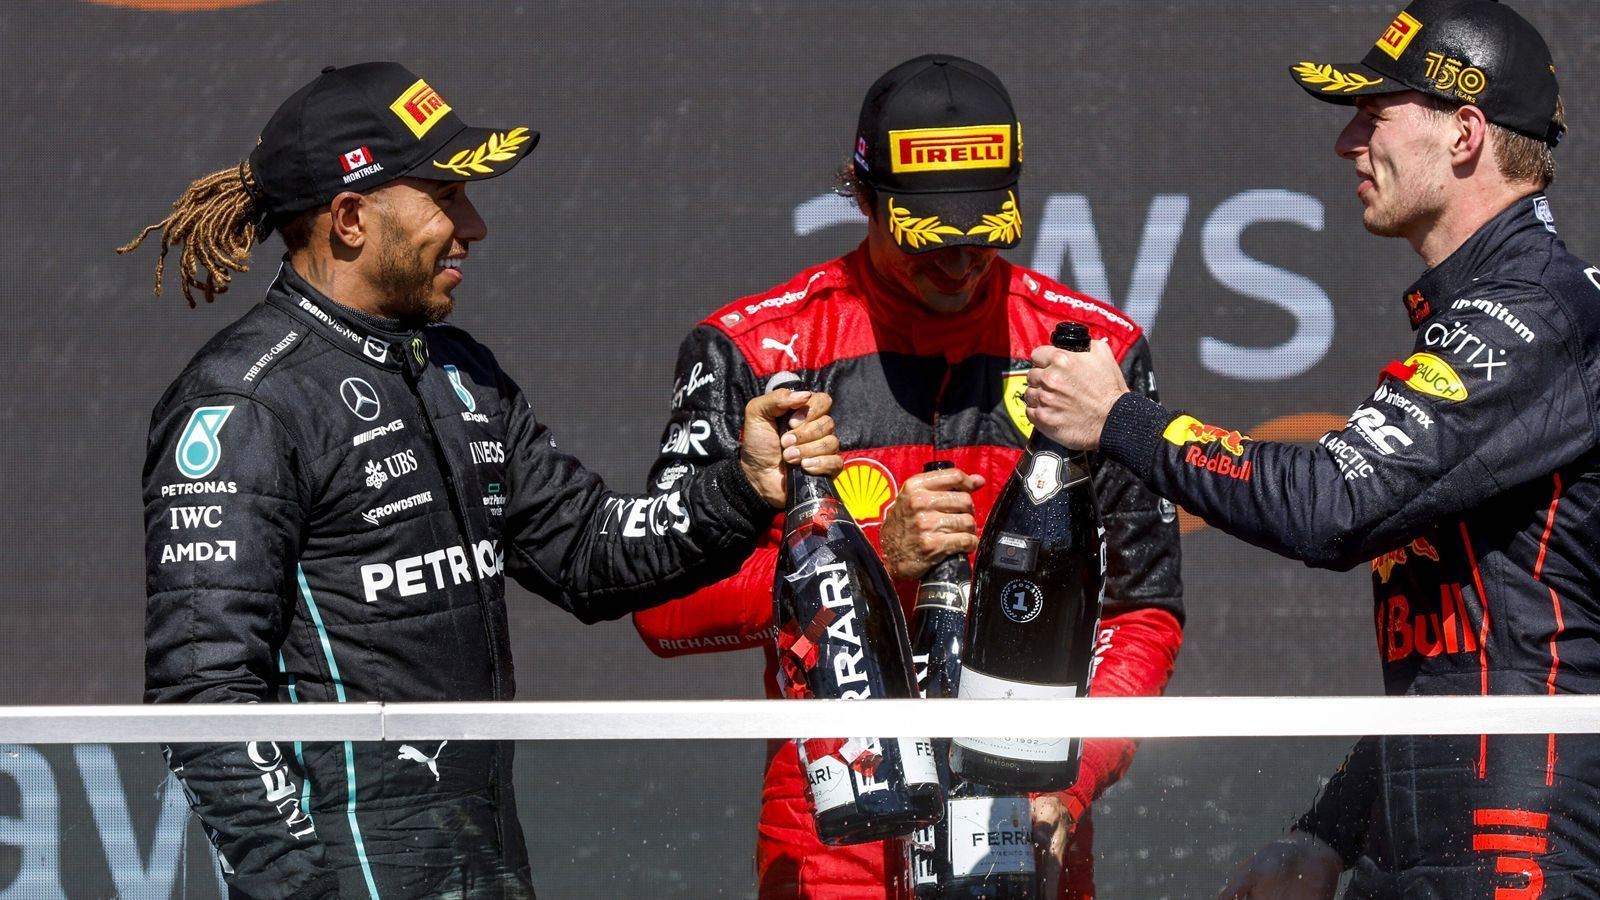 
                <strong>Grundlage wurde 2021 gelegt</strong><br>
                Die Grundlage für das Duell, das von maximalem Ehrgeiz, unbändigem Siegeswillen und starker Abneigung geprägt ist, wird endgültig 2021 gelegt. Denn da kämpfen die beiden Teams nach Jahren der Mercedes-Dominanz endlich auf Augenhöhe. Und das irre Duell zwischen Verstappen und Hamilton geht in die Formel-1-Geschichte ein, mit dem Finale als unglaublichem Höhepunkt der Saison.
              